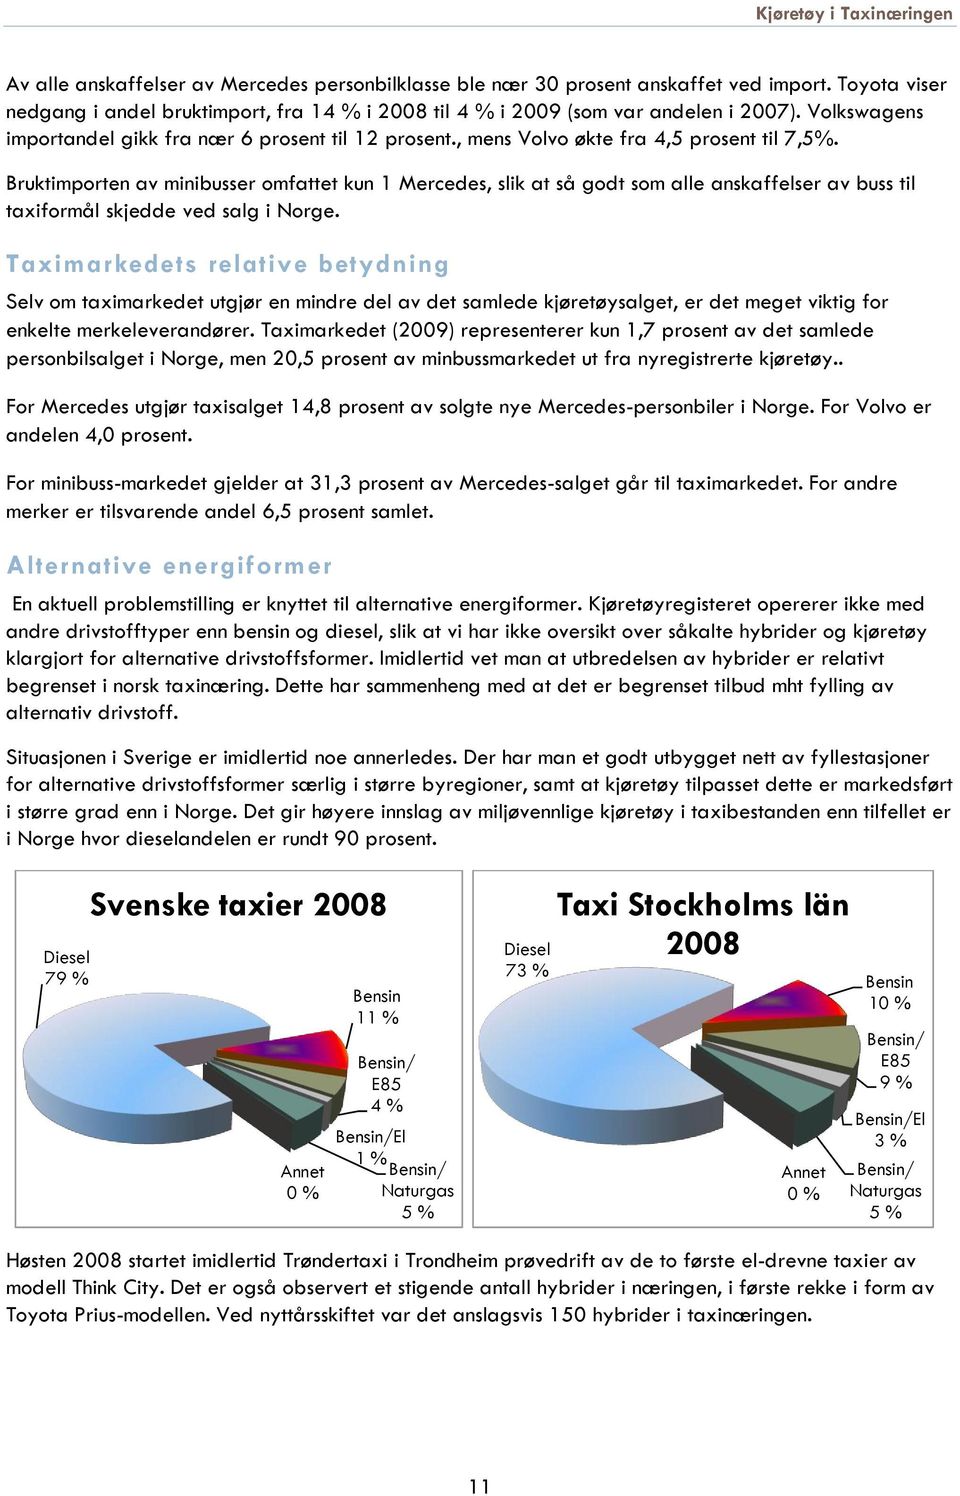 Bruktimporten av minibusser omfattet kun 1 Mercedes, slik at så godt som alle anskaffelser av buss til taxiformål skjedde ved salg i Norge.